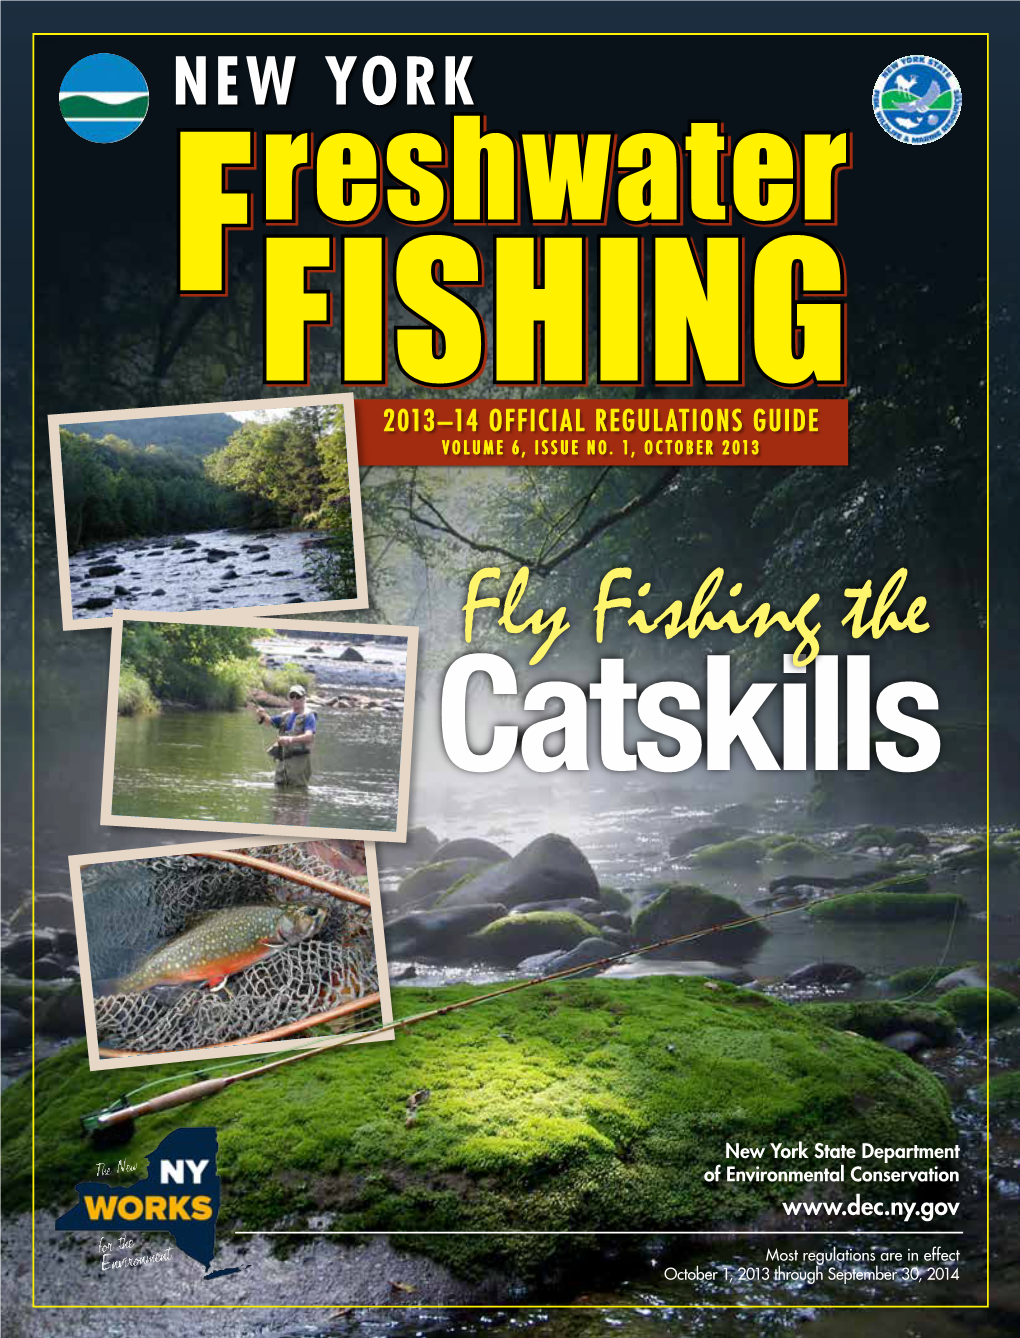 New York Freswater Fishing Regulations